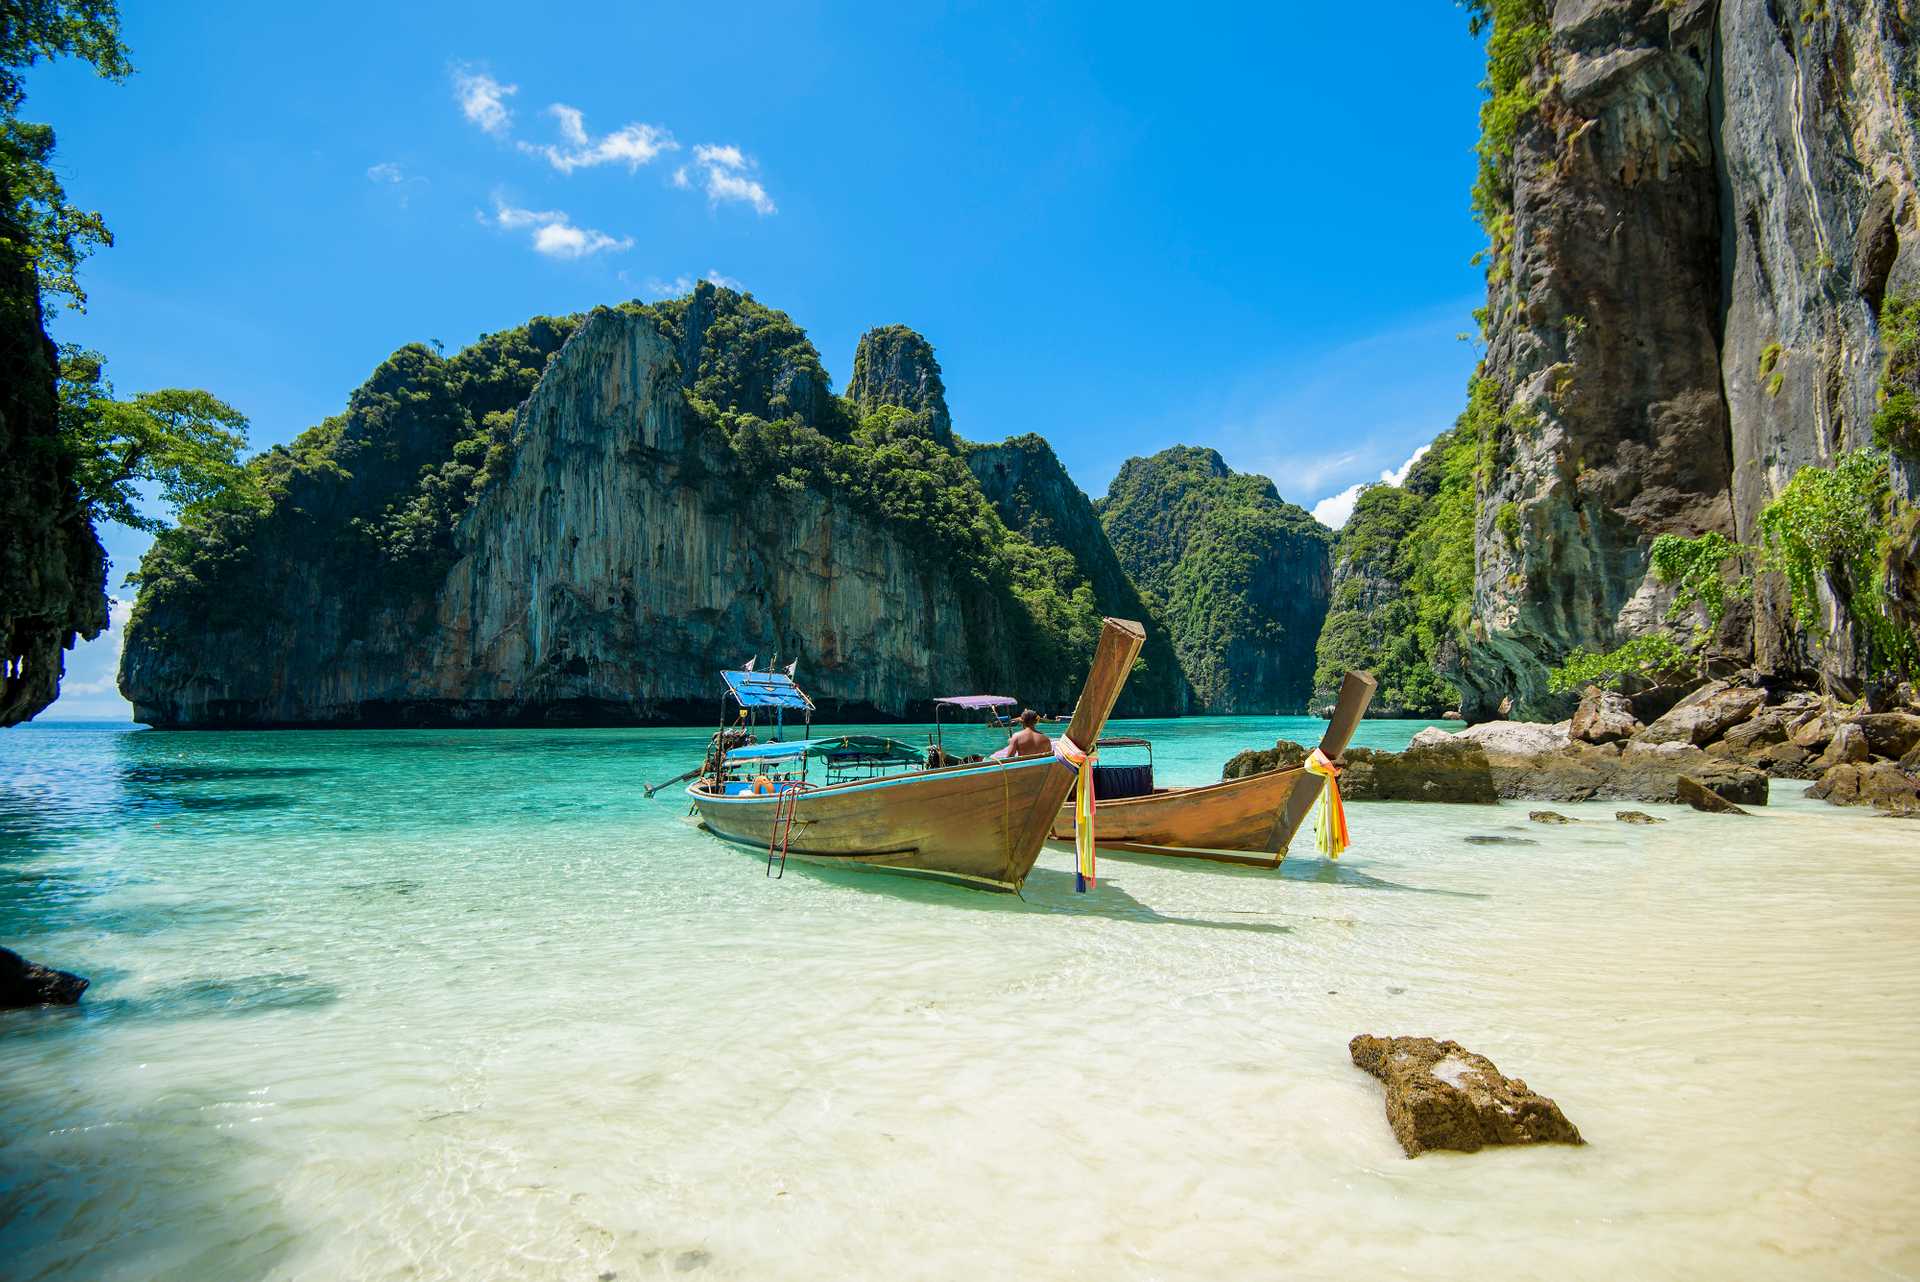 Phuket ( Thajsko ), tip na trip, tip na nejlevnější letenka | Lowkosťák